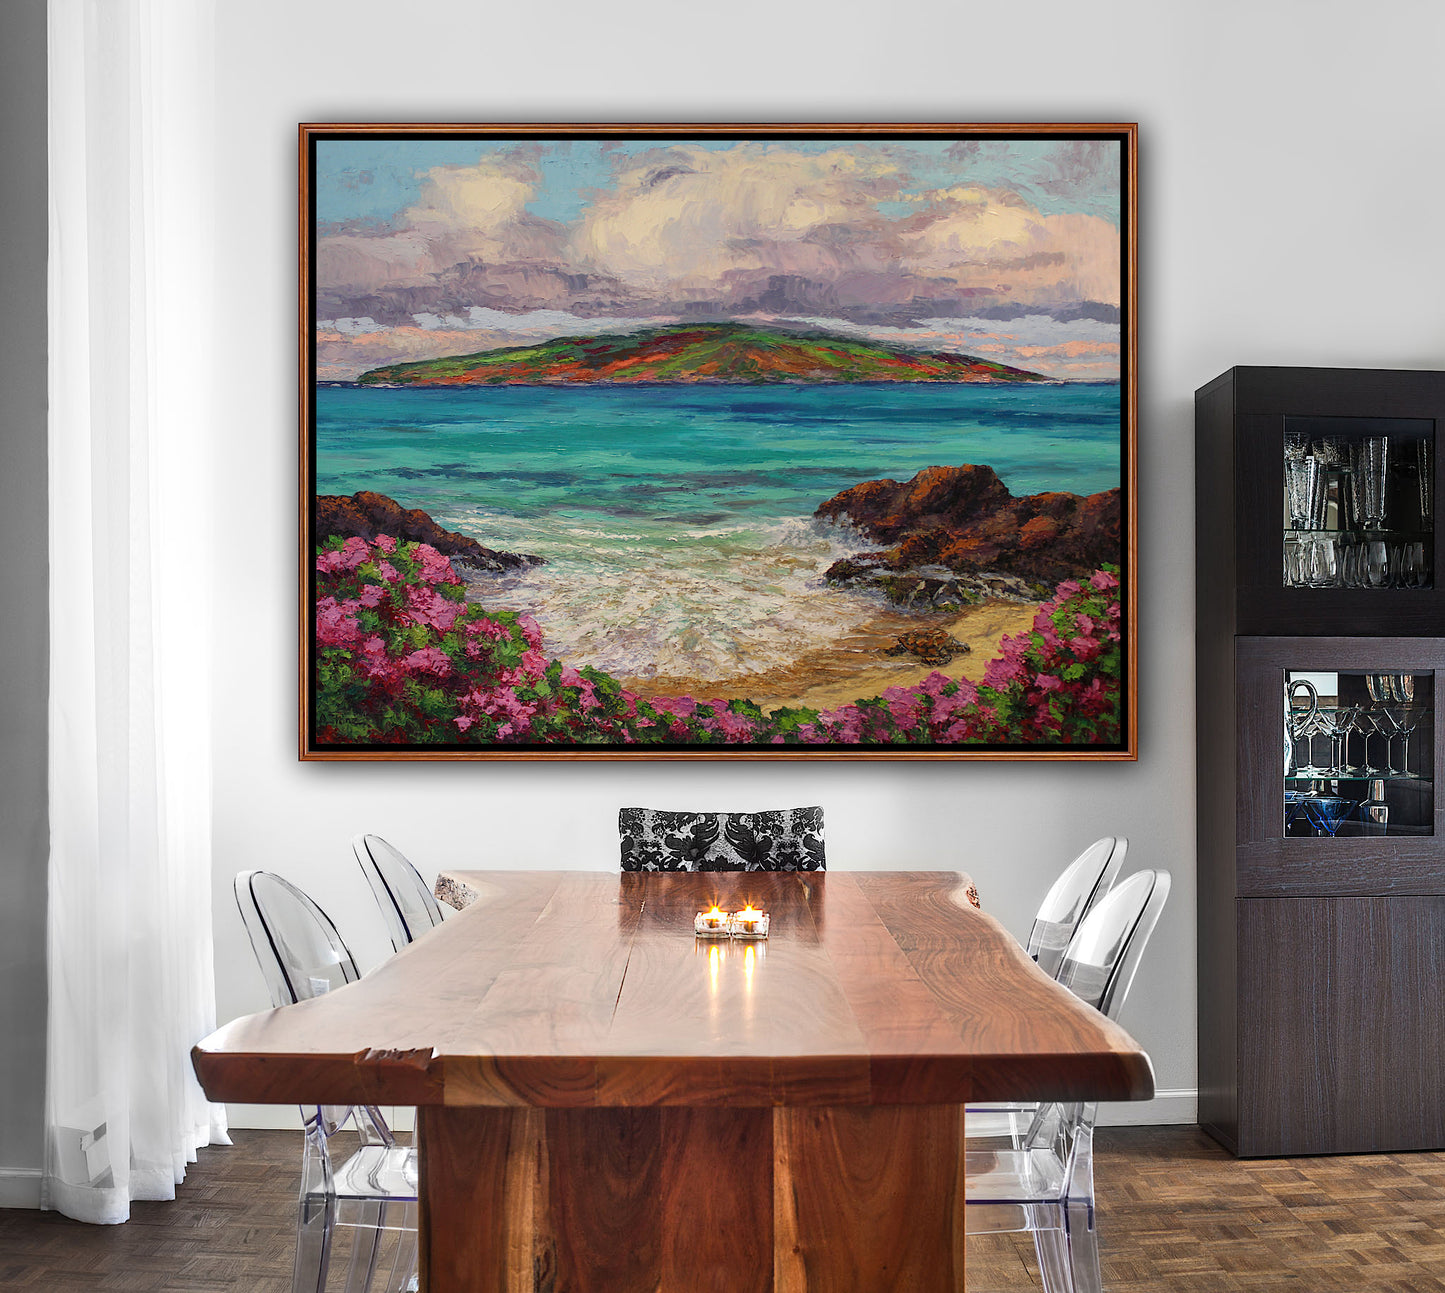 Turtle Beach Maui, An Original 30" x 40" Hawaiian Seascape Oil Painting On Canvas